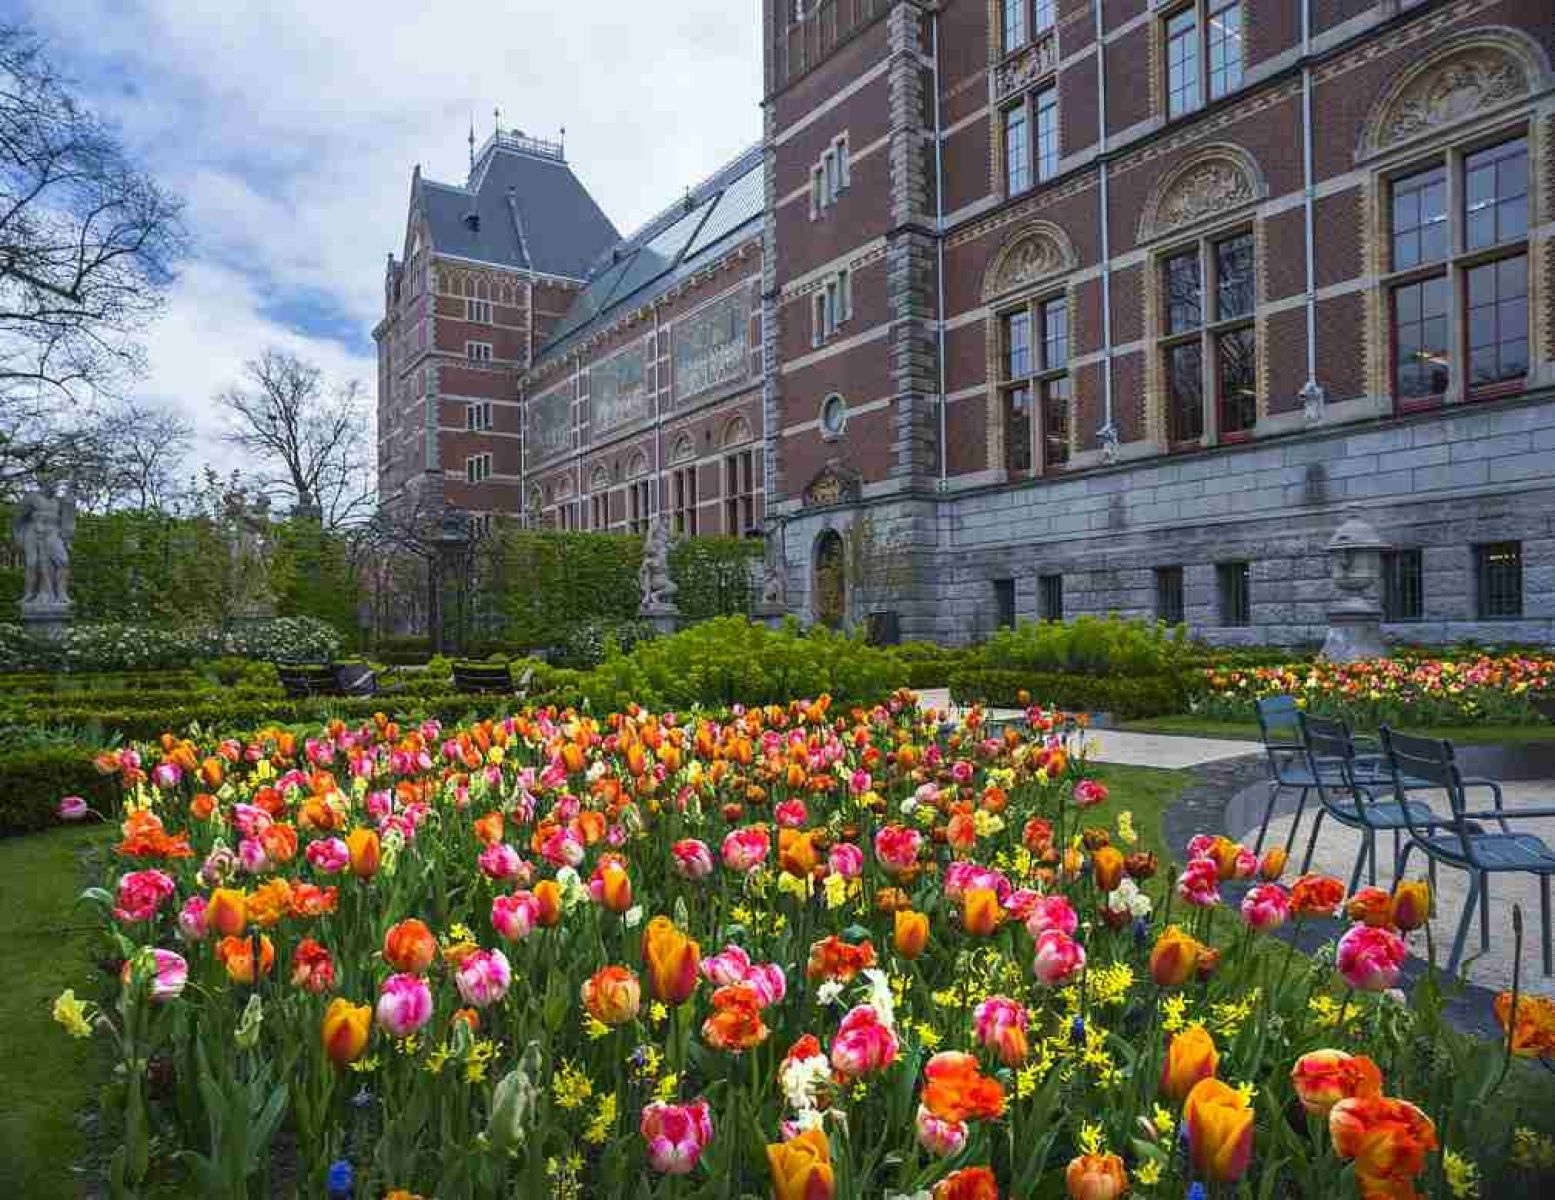 Bij het Rijksmuseum in Amsterdam staan de tulpen ook fraai in bloei. Foto: John Lewis Marshall.